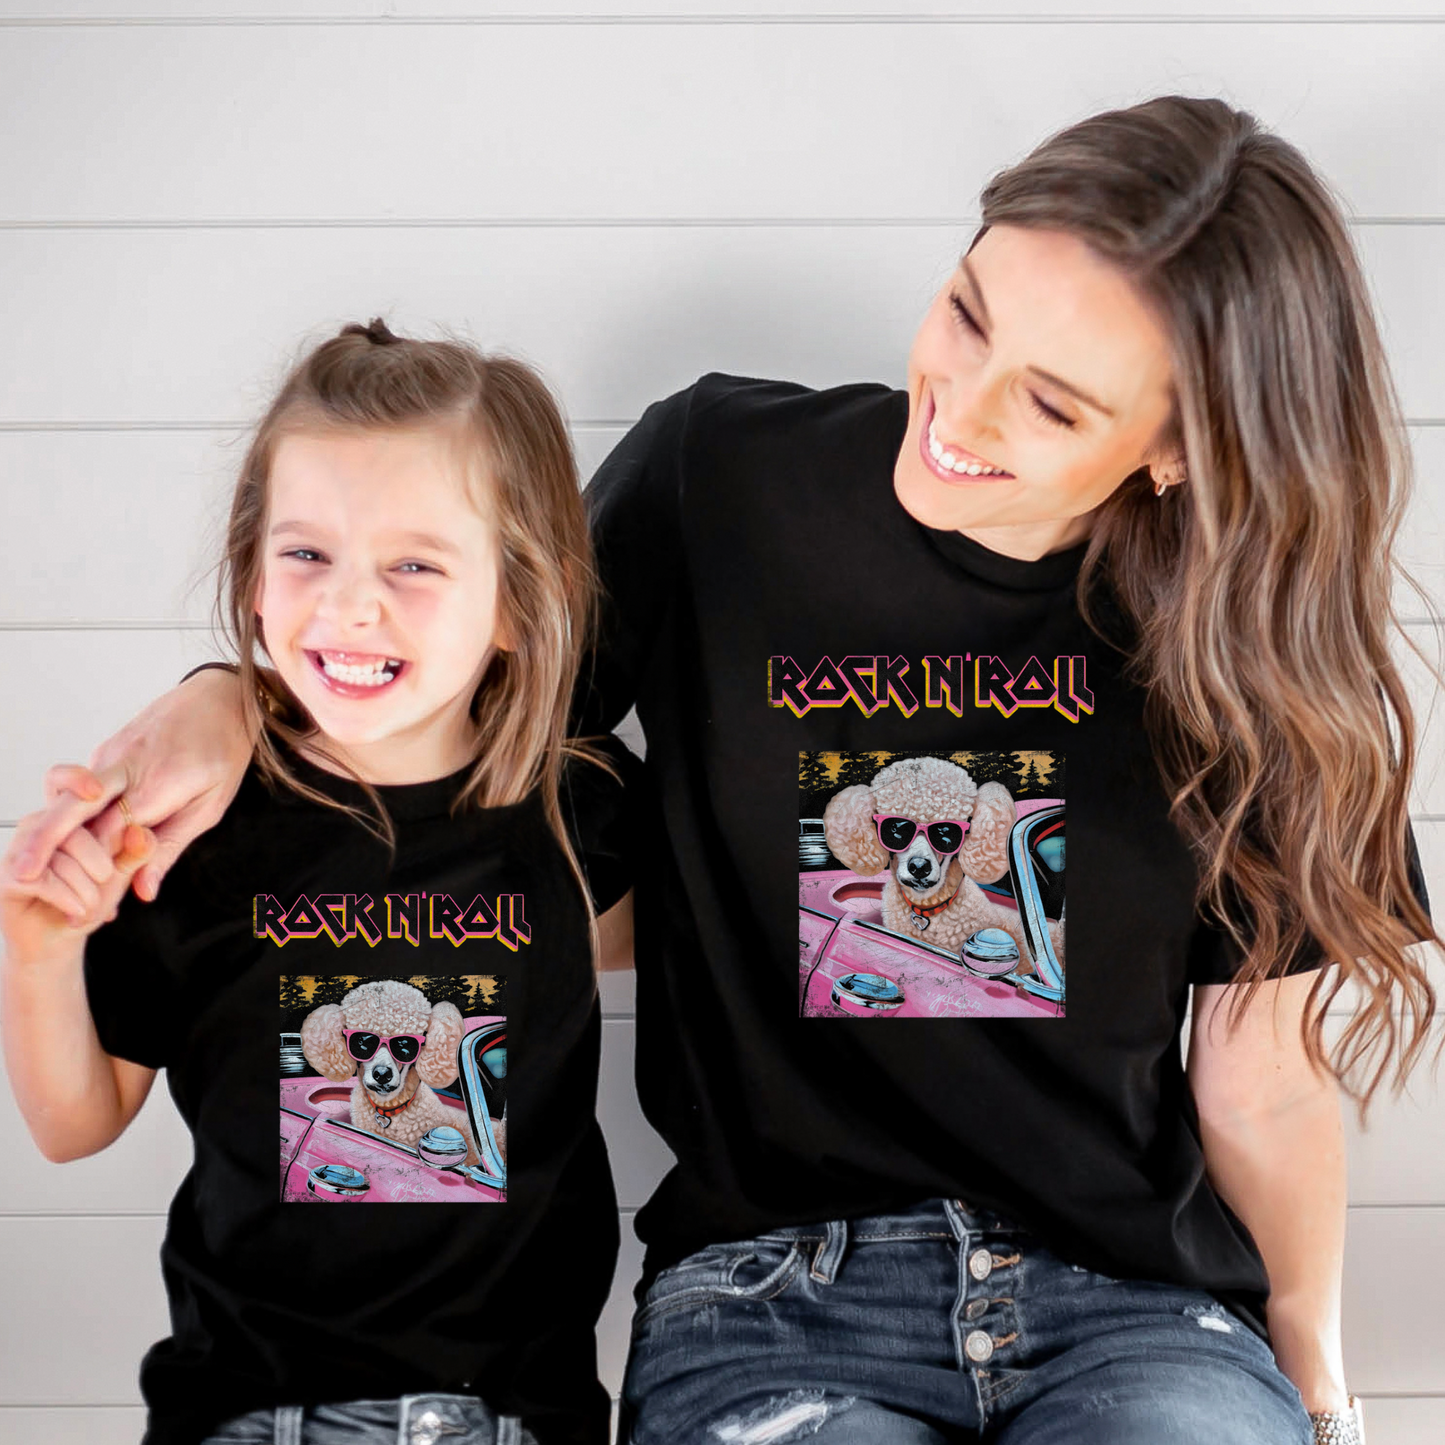 Poodle t-shirt | Kids t-shirt